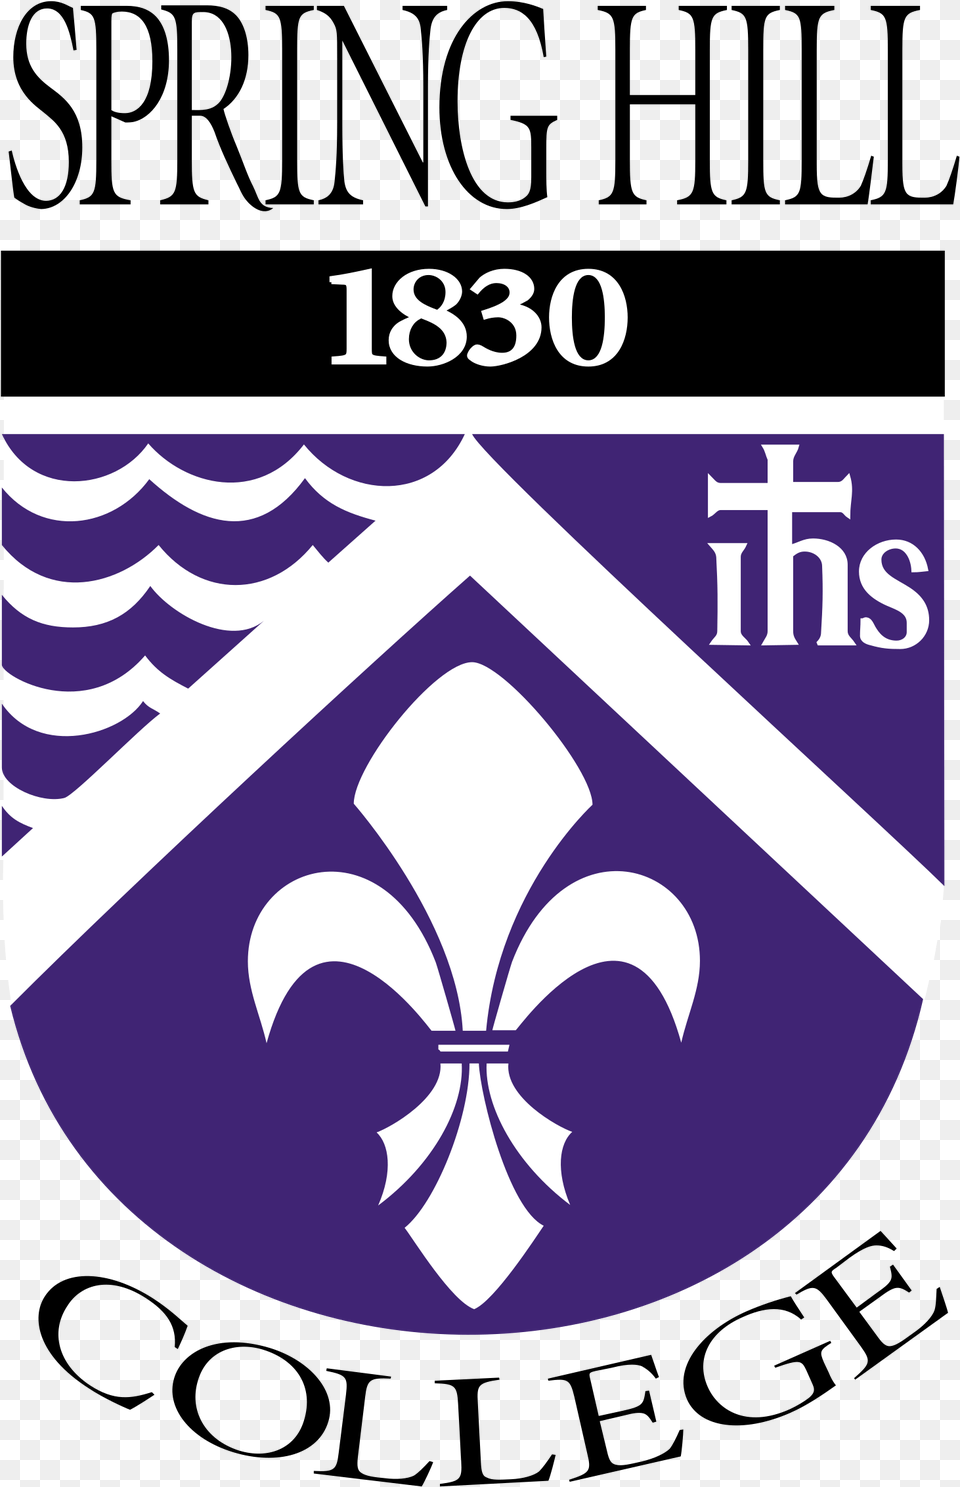 Spring Hill College Emblem, Logo, Symbol Free Transparent Png